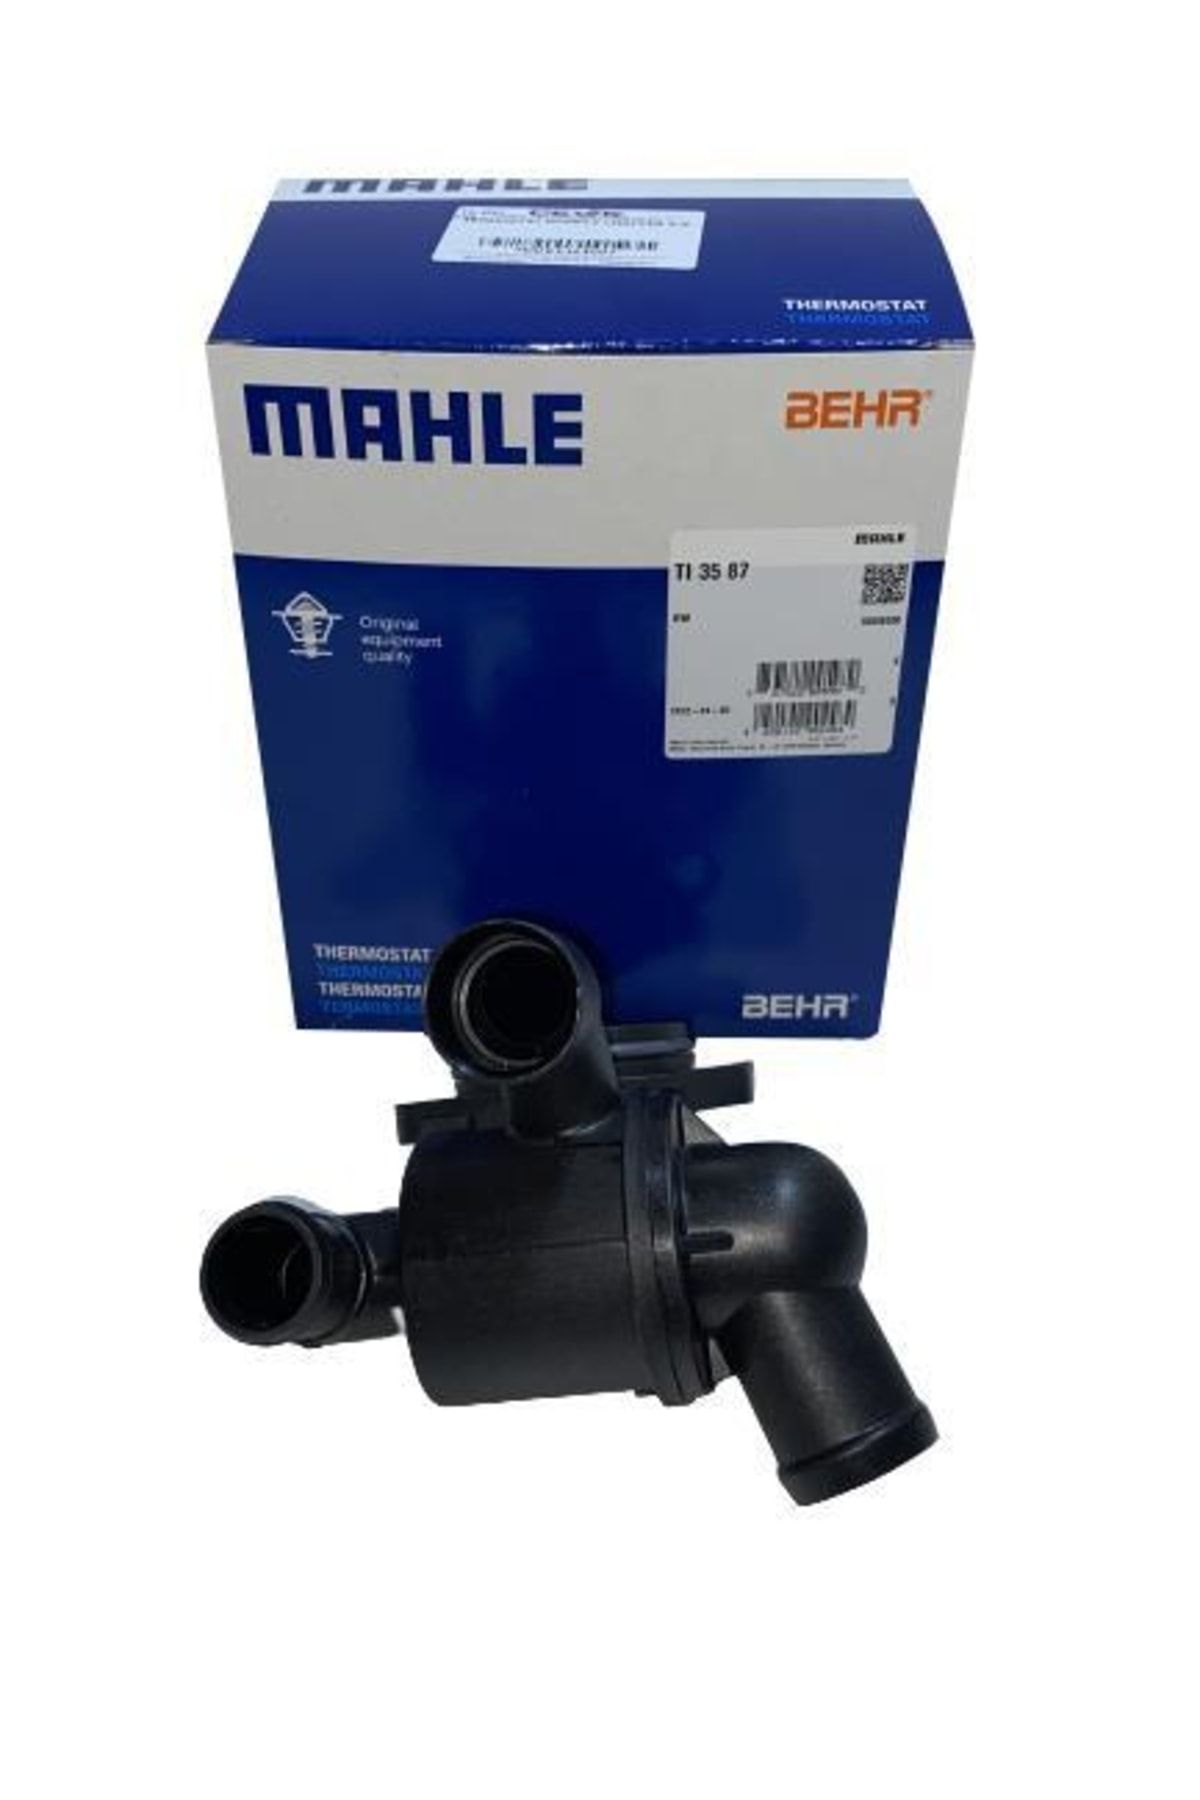 Mahle Termostat Komple / Amarok-crafter / Tı3587-03l121111ab